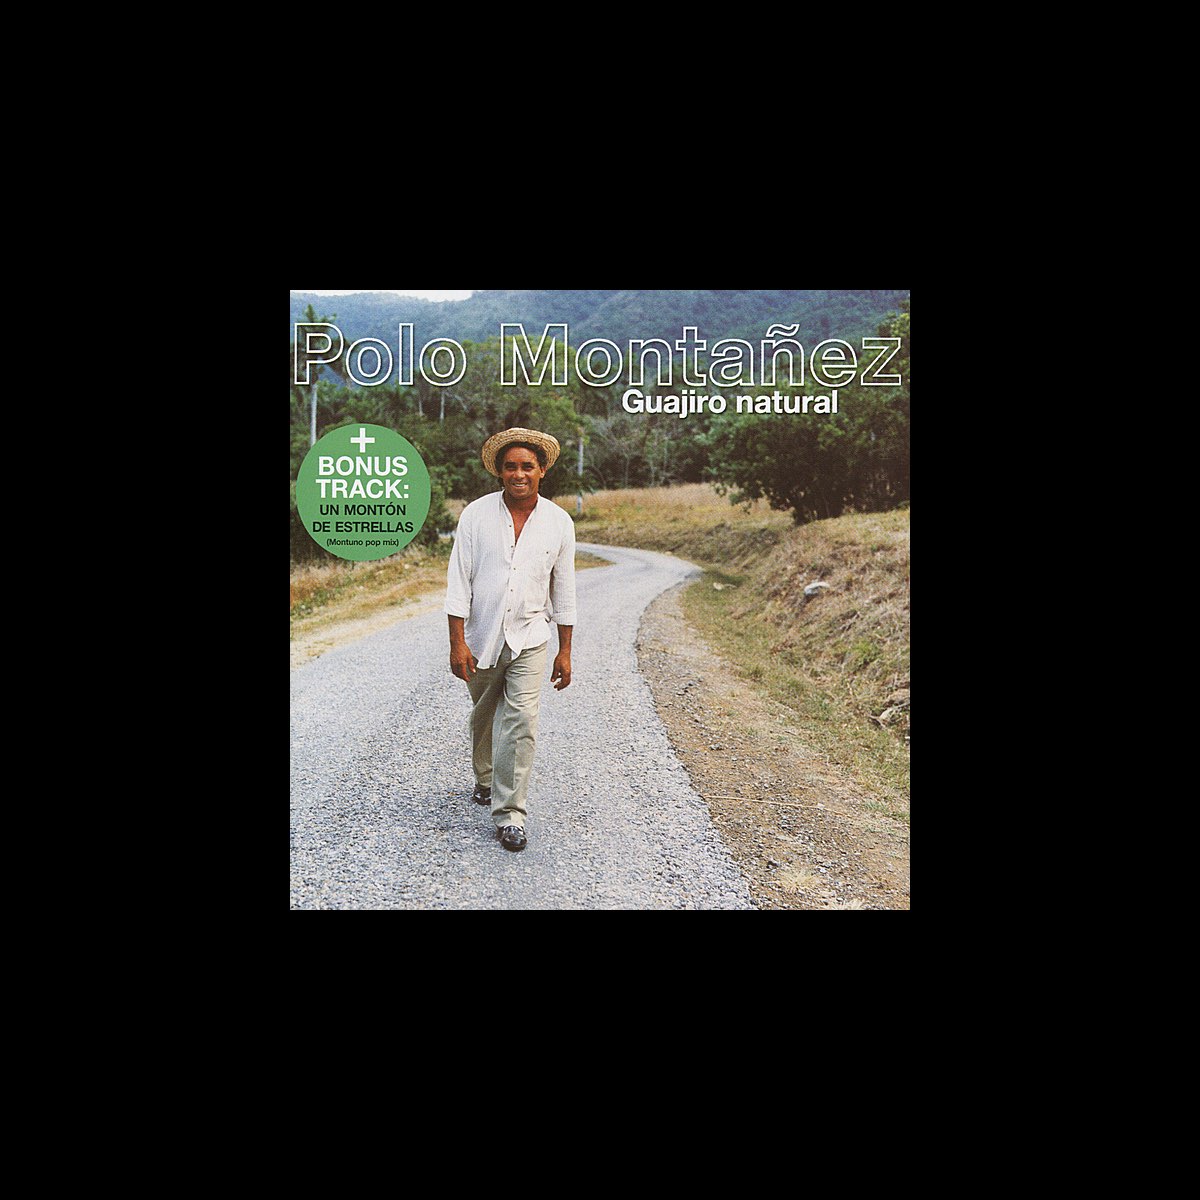 Guajiro Natural” álbum de Polo Montañez en Apple Music